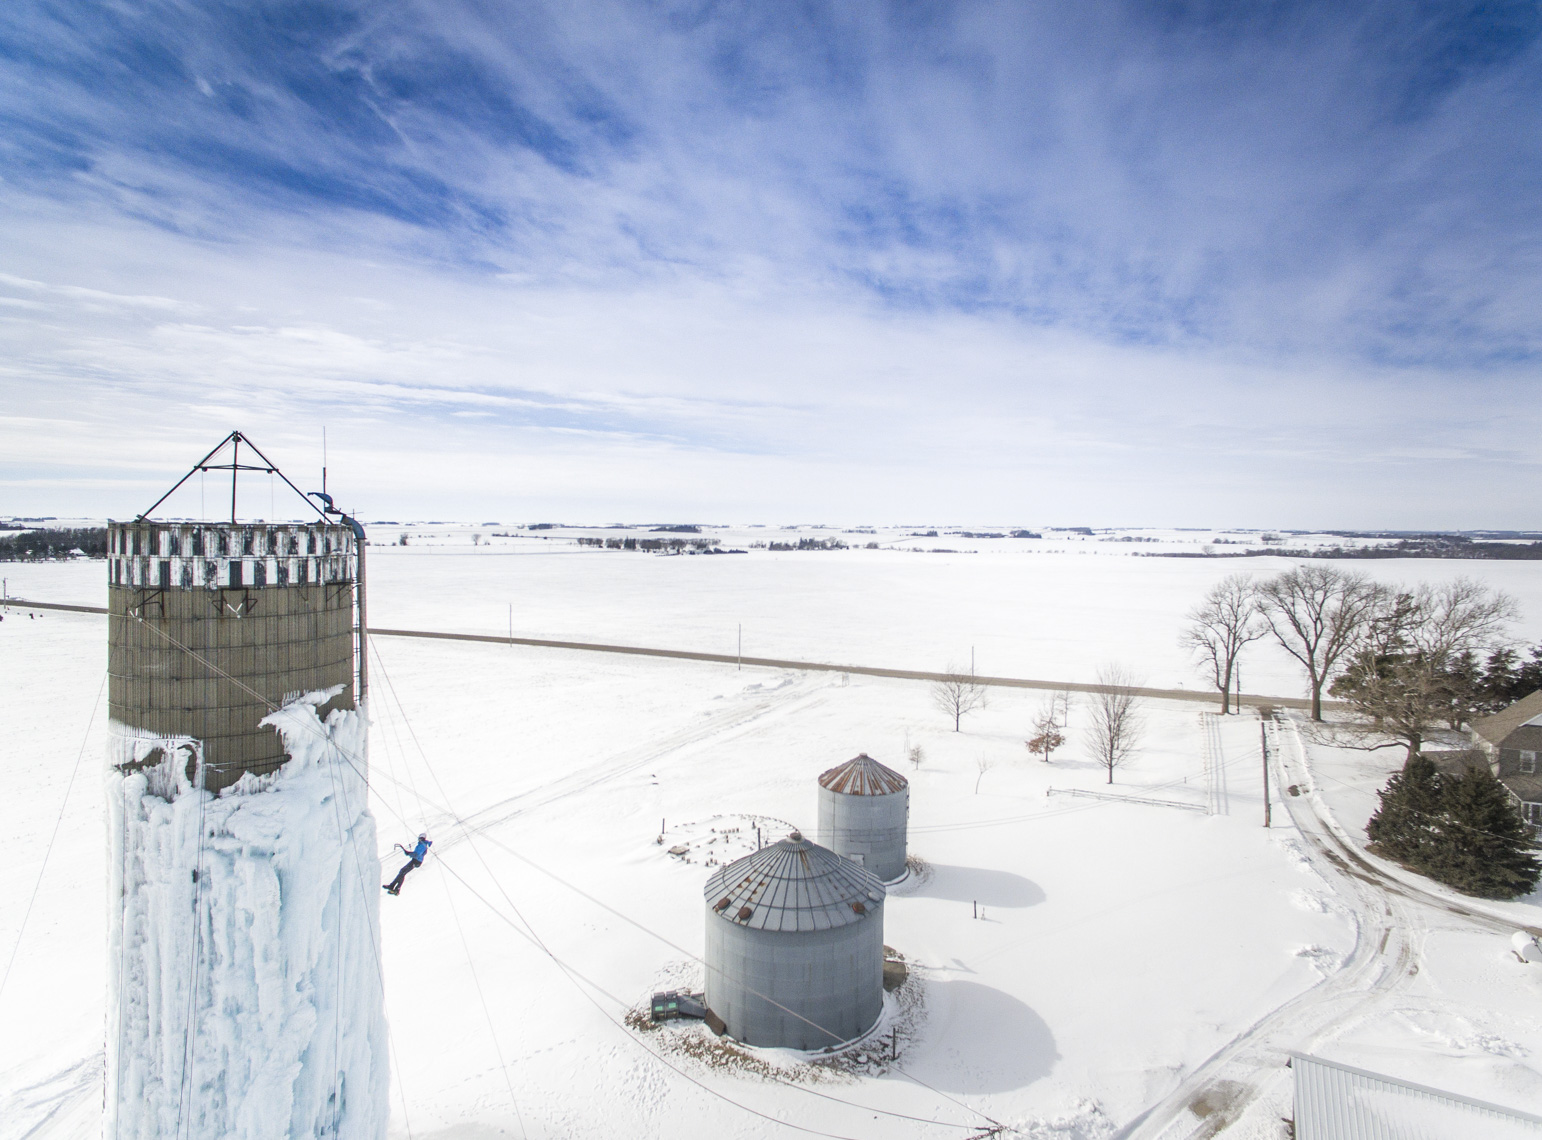 Ice climbing a silo in Northern Iowa